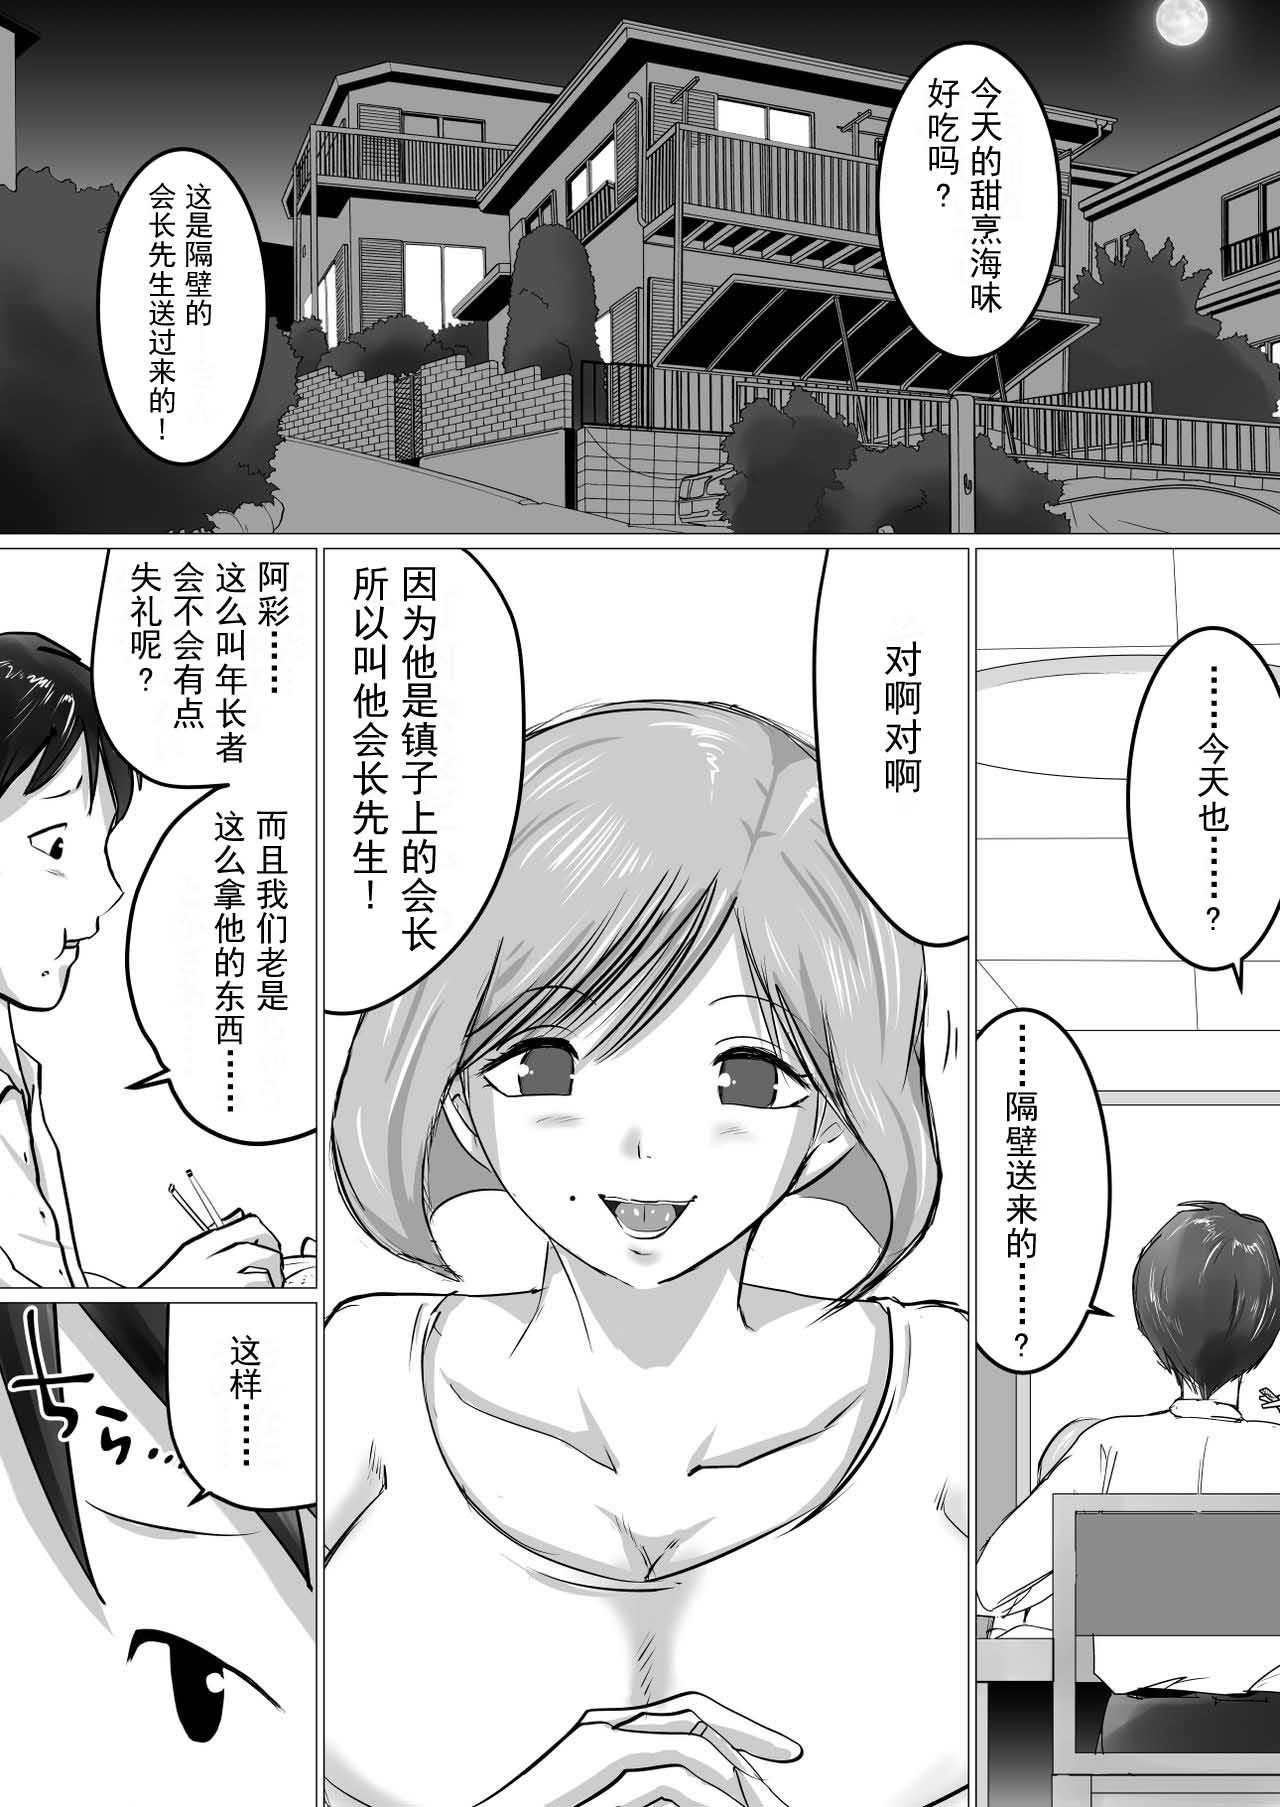 Hogtied [Makoto Shiyaka] Rinjin ni Dakare Tsuzukeru to iu koto[Chinese]【不可视汉化】 - Original Spoon - Page 2